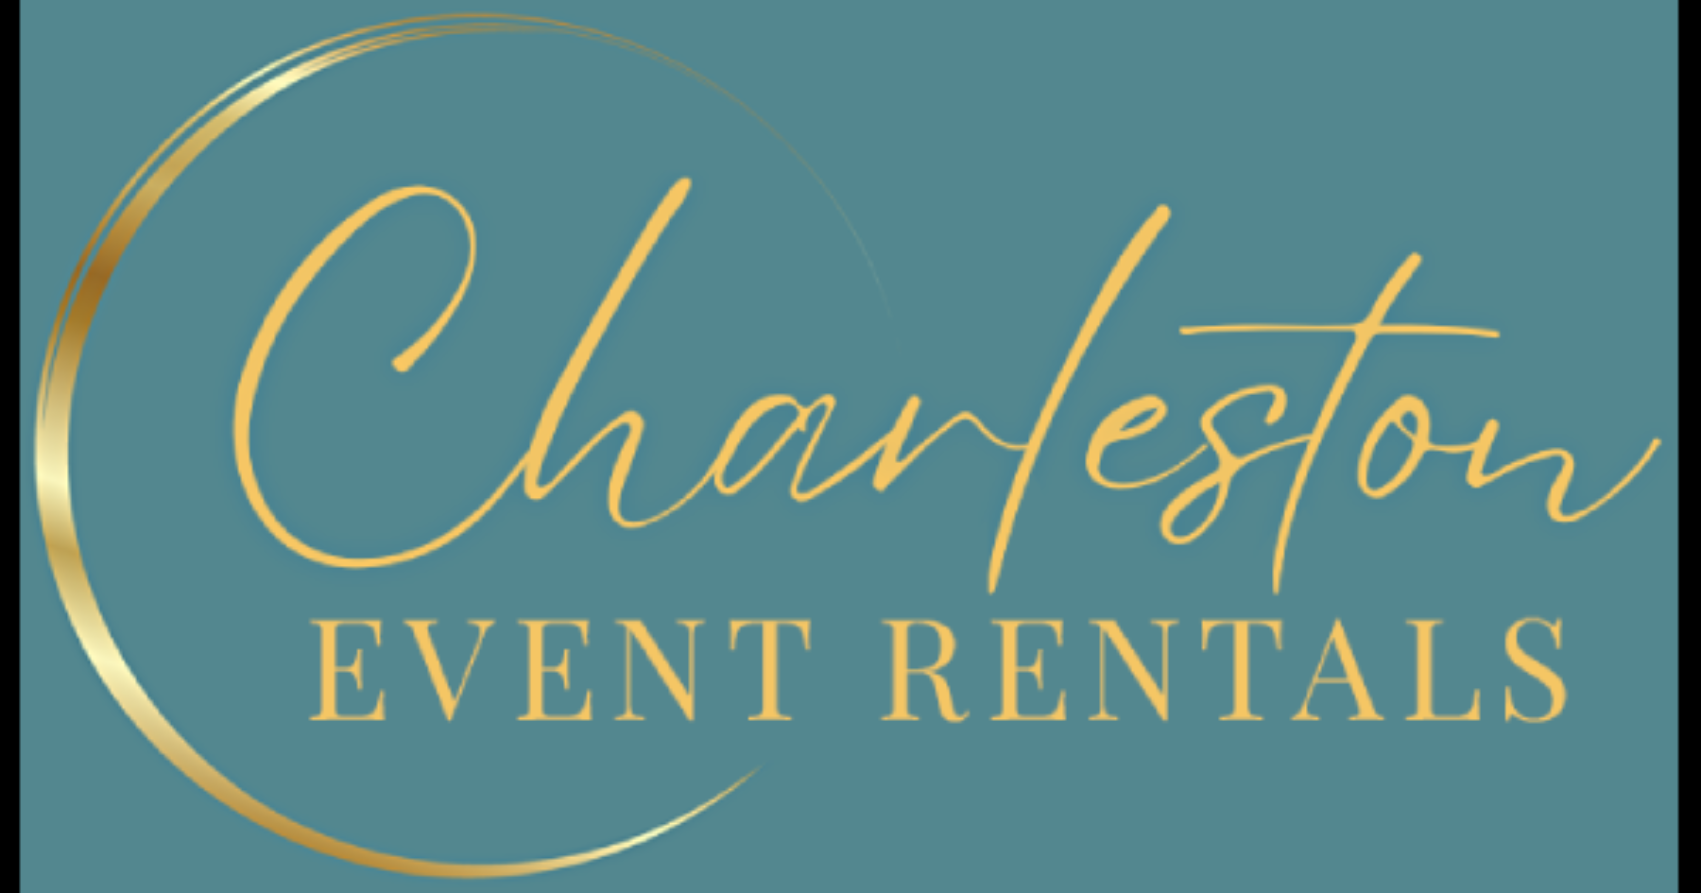 Charleston Event Rentals | Party & Event Rentals | Charleston SC ...